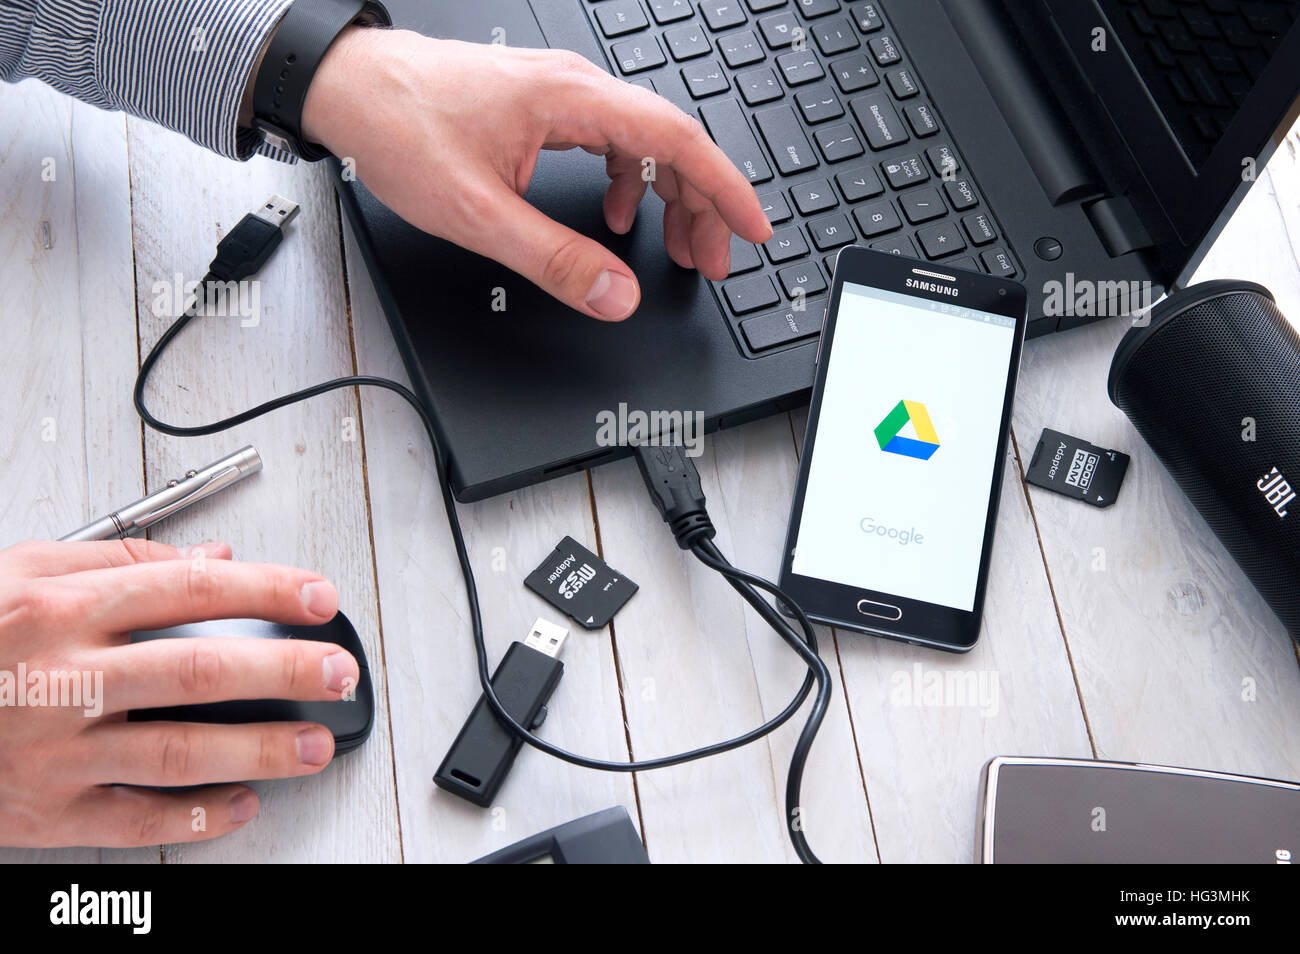 WROCLAW, Pologne- Octobre 05th, 2016 : l'Homme lance une application sur Google Drive Samsung A5. Google Drive est un service de stockage de fichiers et de synchronisation Banque D'Images